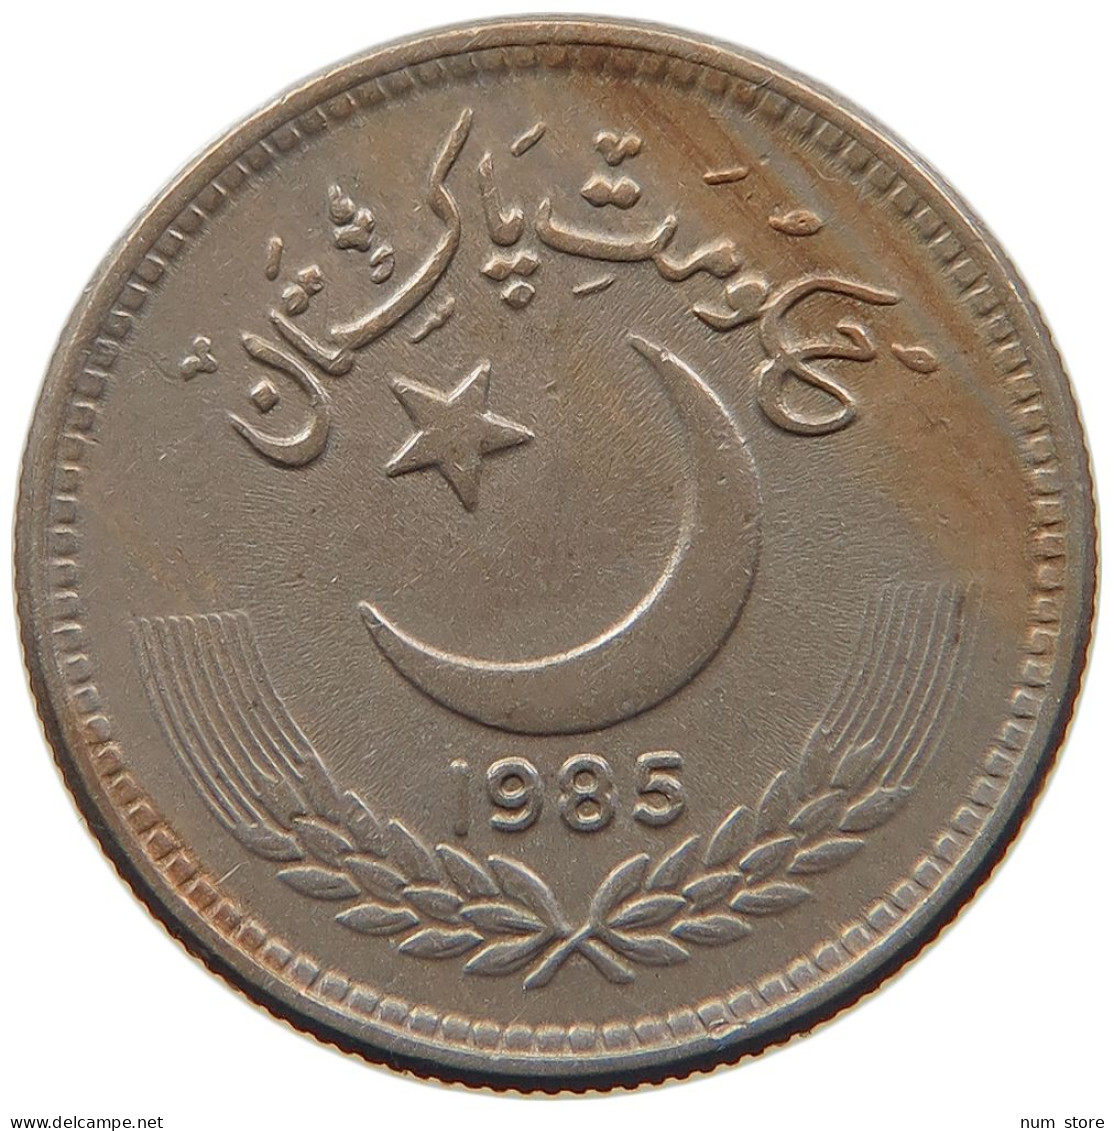 PAKISTAN 25 PAISA 1985 #s096 0469 - Pakistán